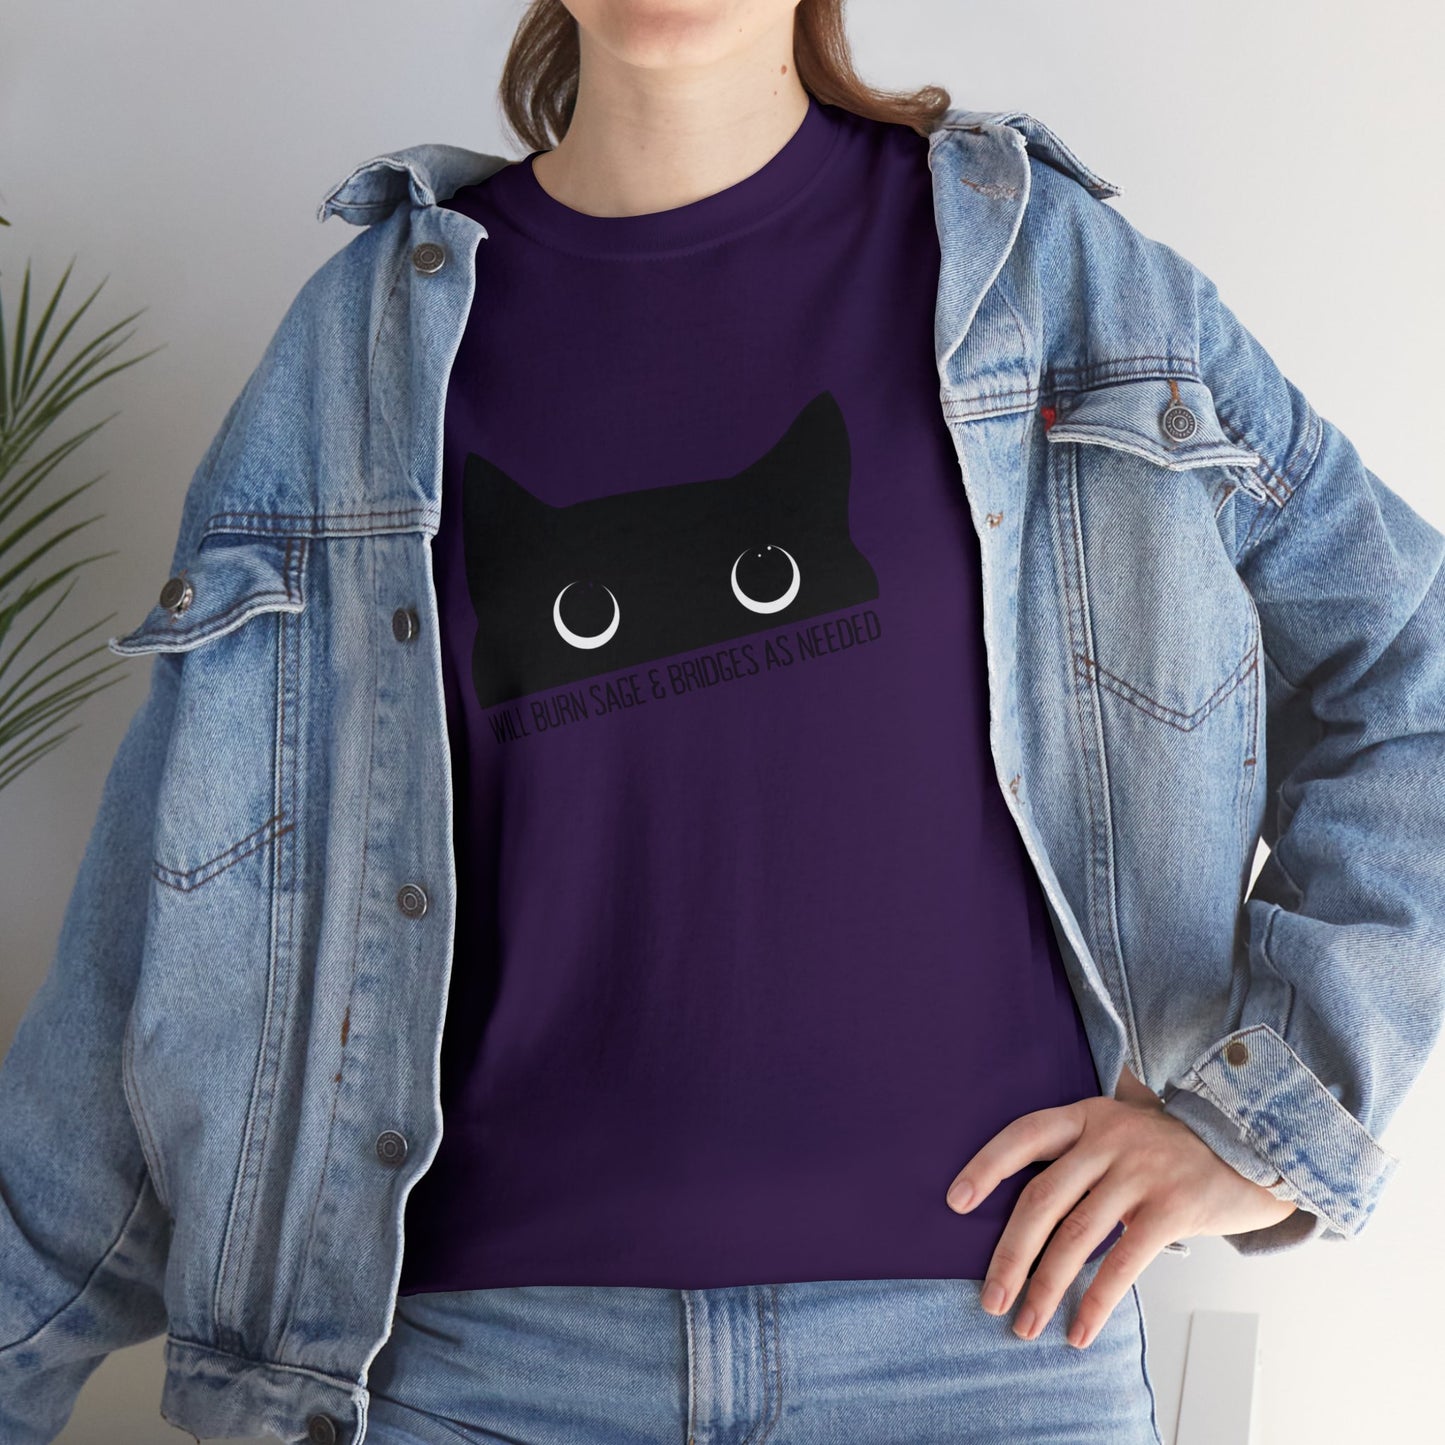 Black Cat Cotton t-shirt